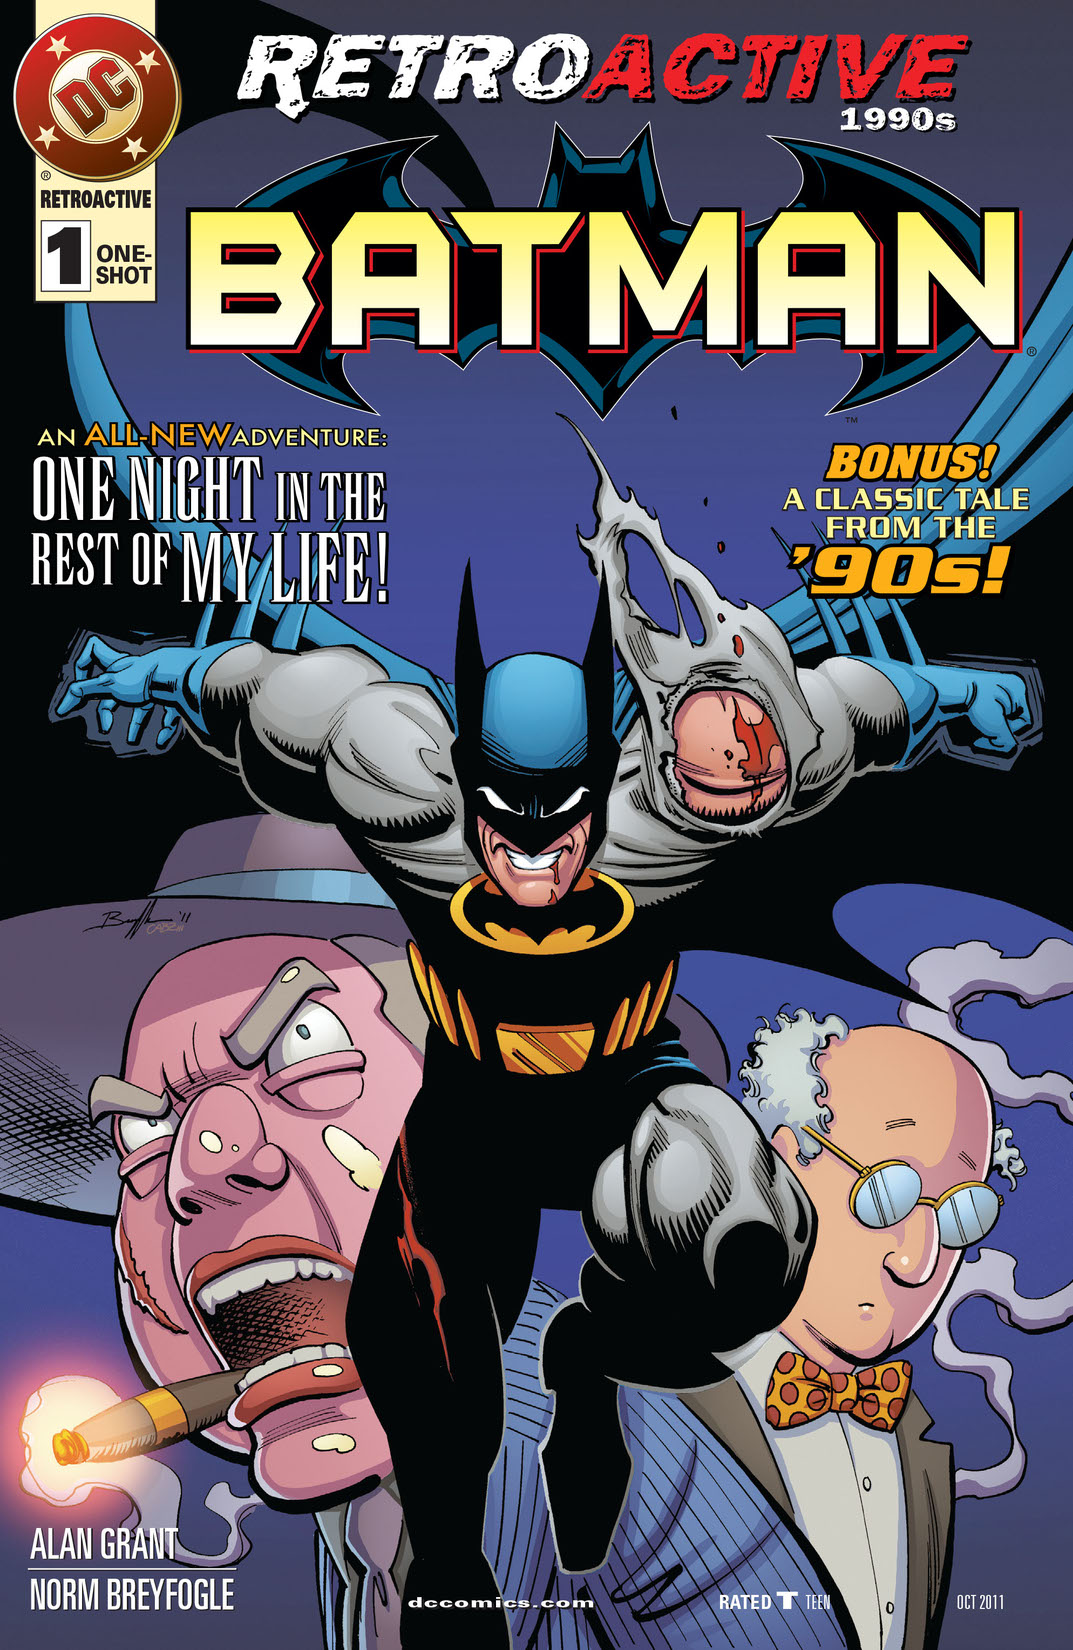 DC Retroactive: Batman - The '90s #1 preview images